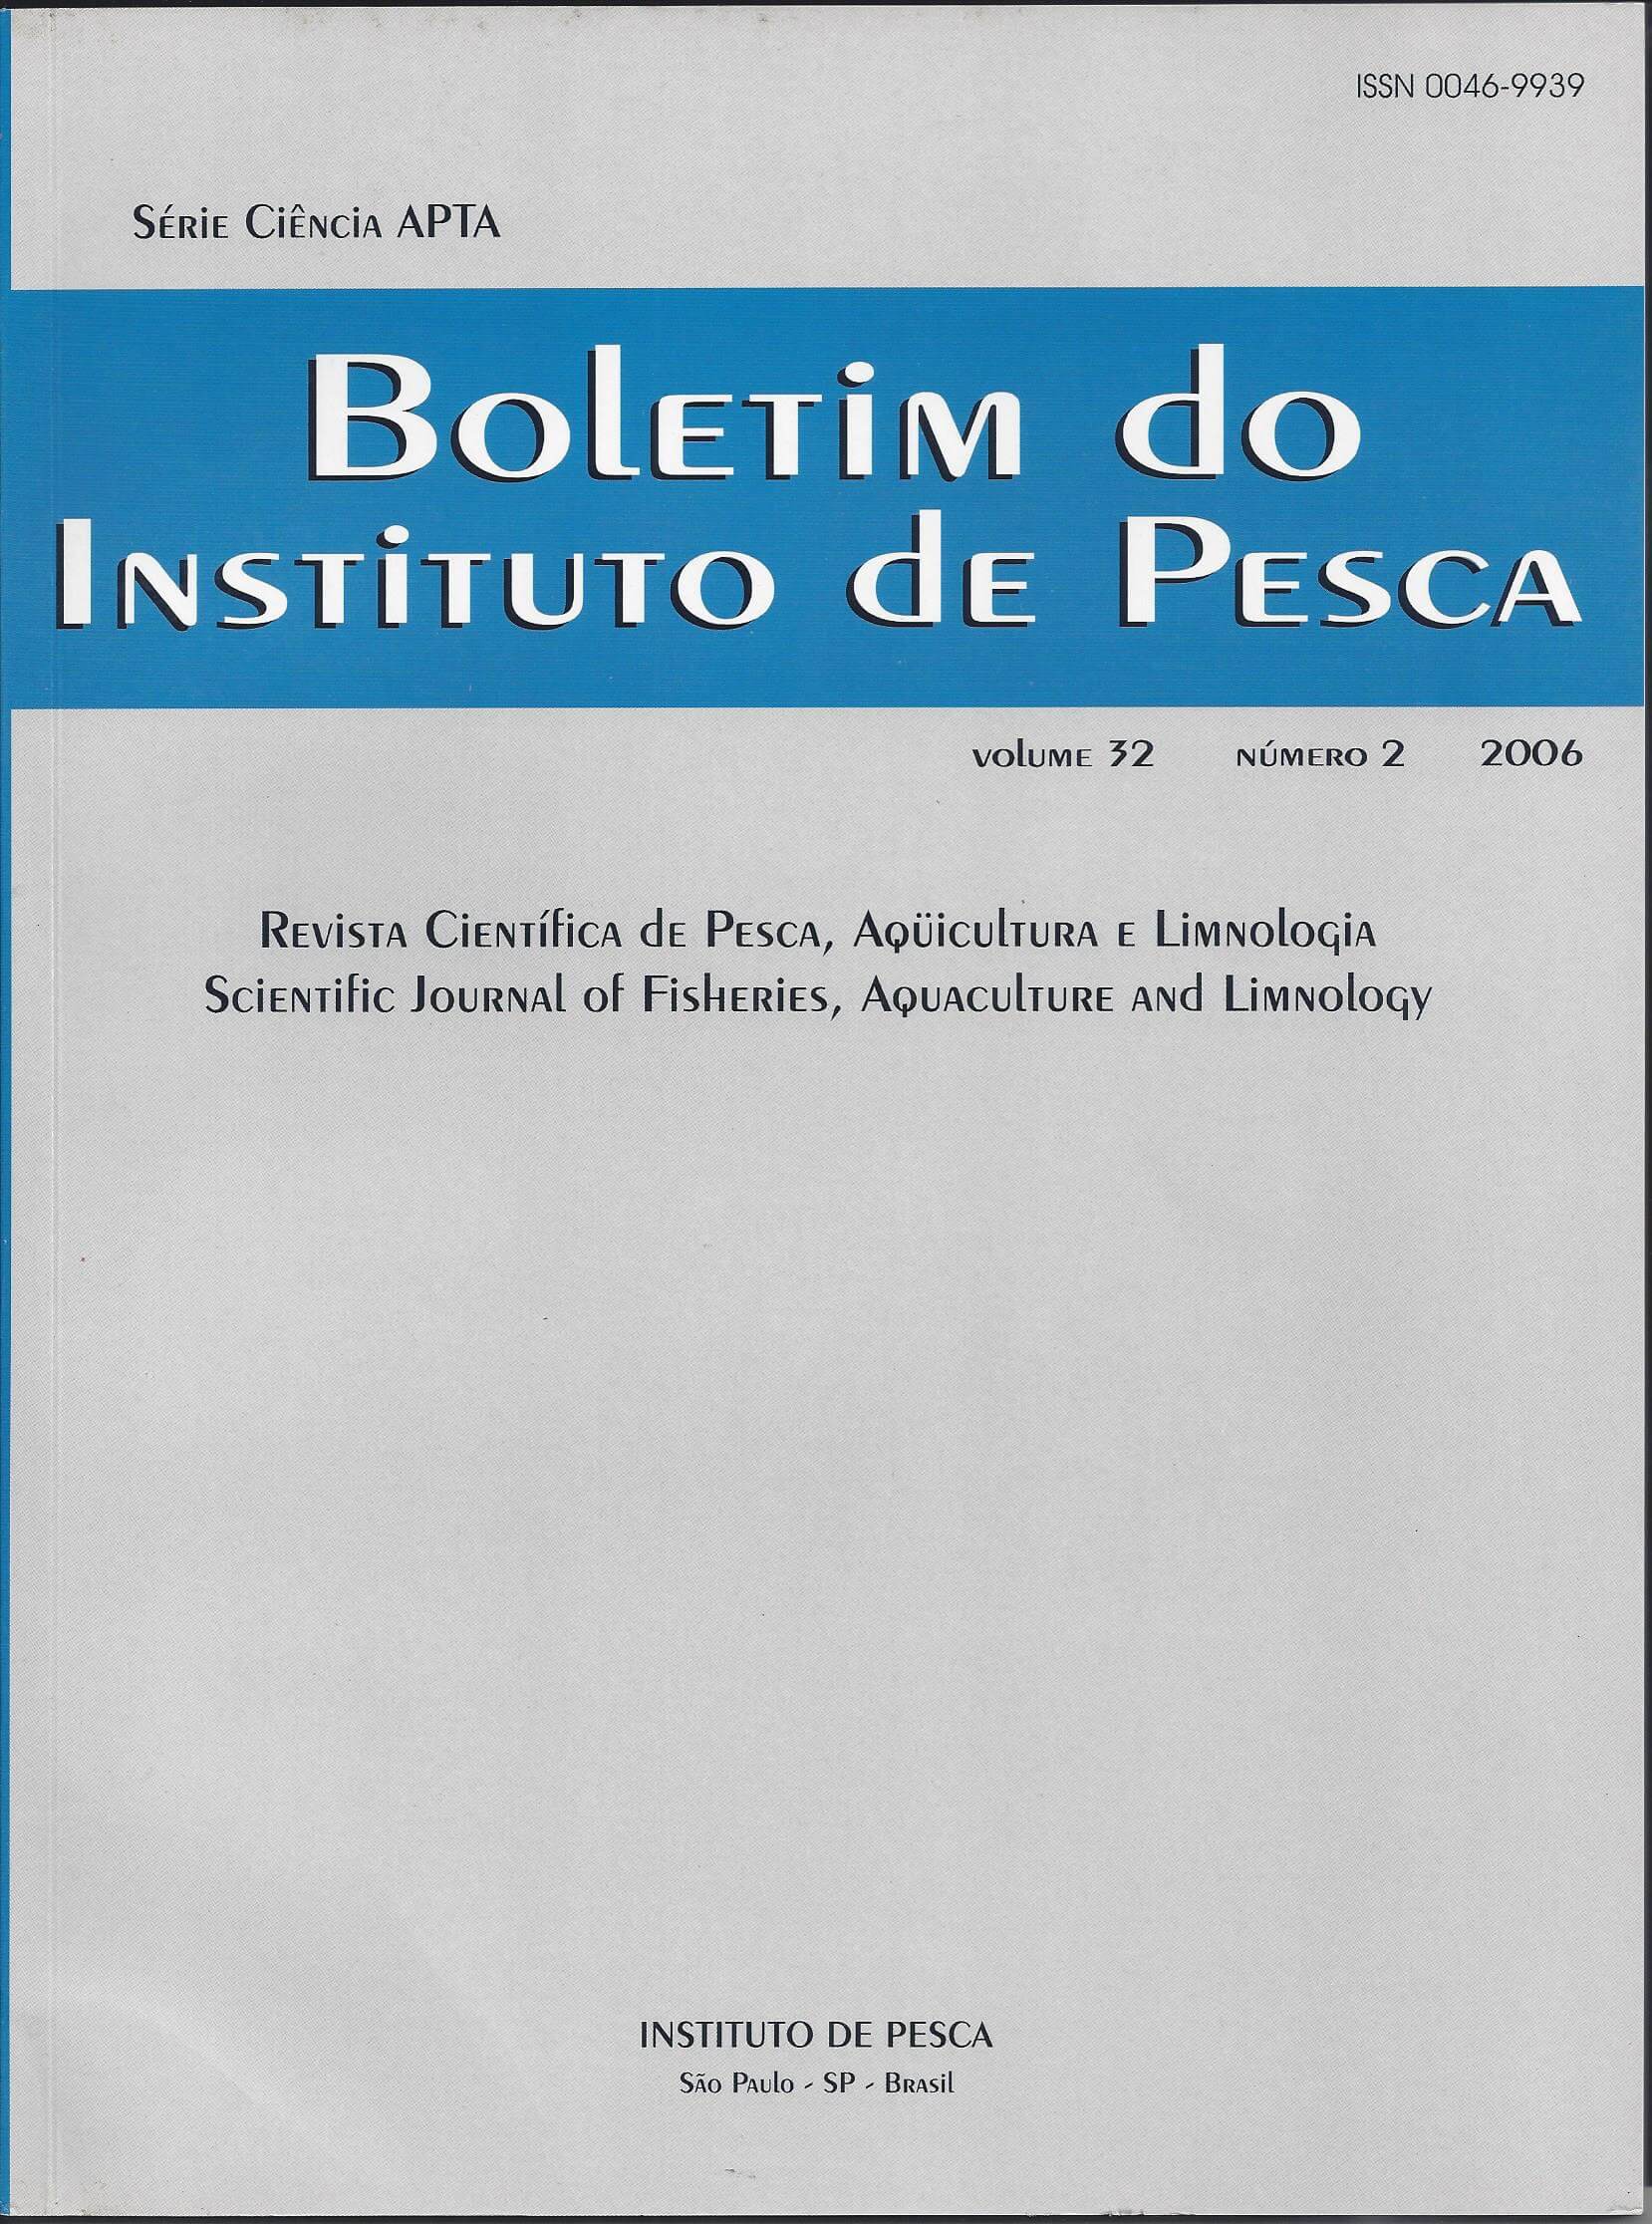 					View Vol. 32 No. 2 (2006): BOLETIM DO INSTITUTO DE PESCA
				